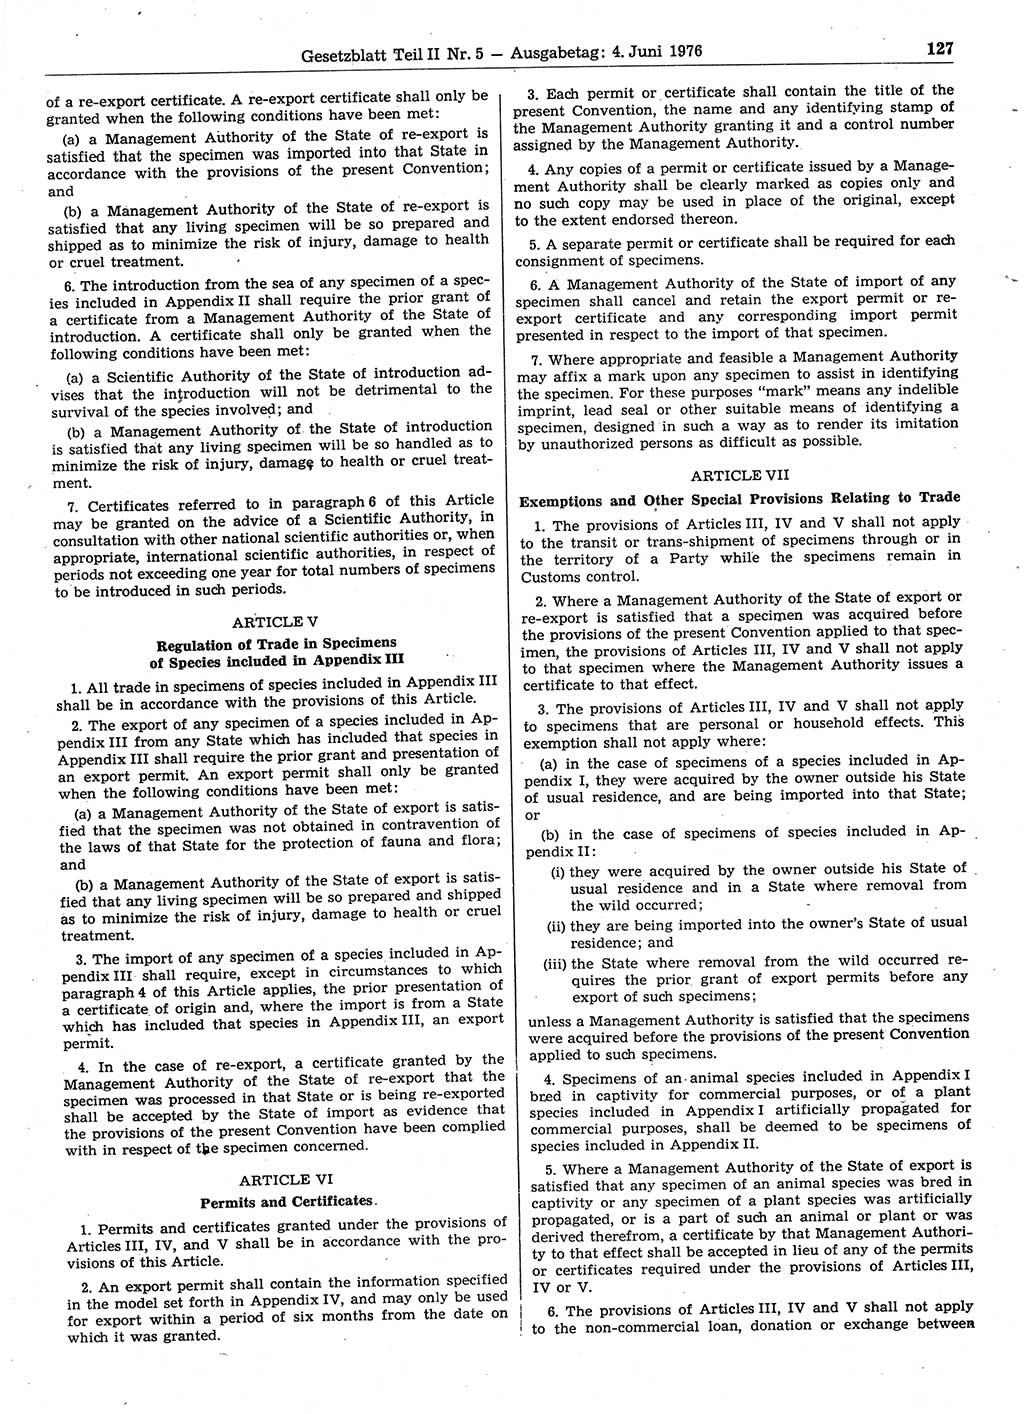 Gesetzblatt (GBl.) der Deutschen Demokratischen Republik (DDR) Teil ⅠⅠ 1976, Seite 127 (GBl. DDR ⅠⅠ 1976, S. 127)